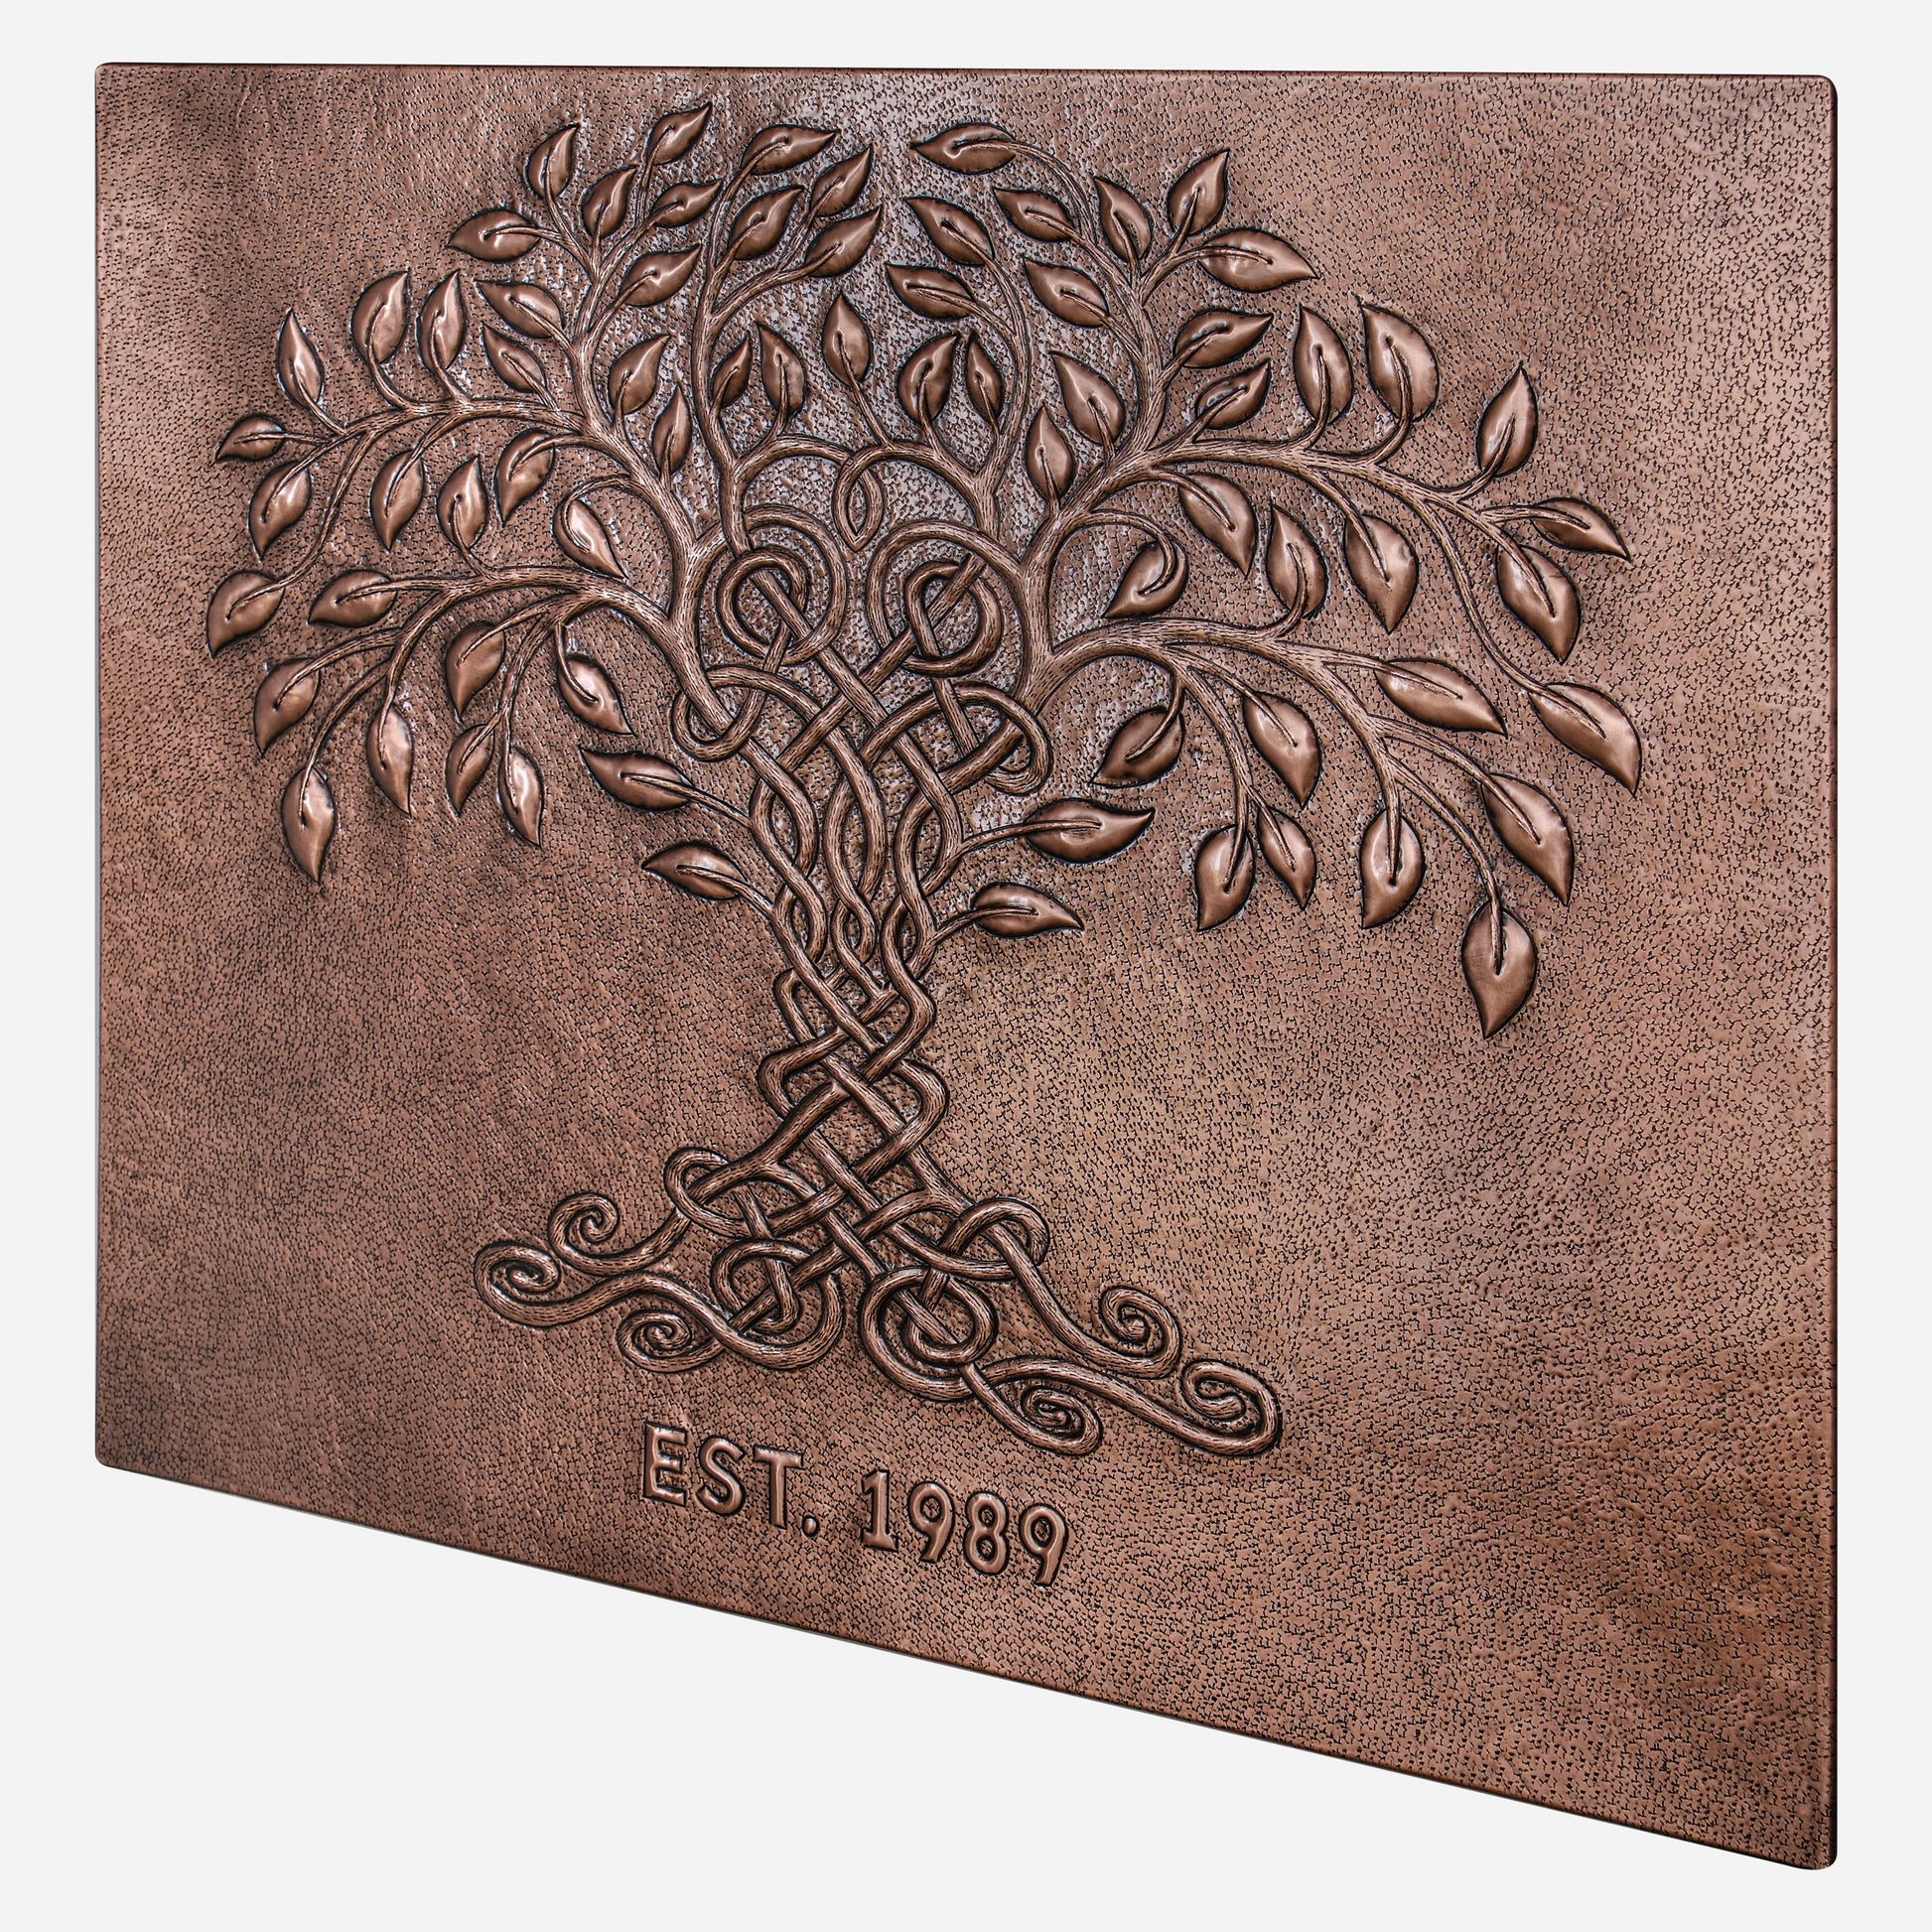 Copper Kitchen Backsplash Tree of Life